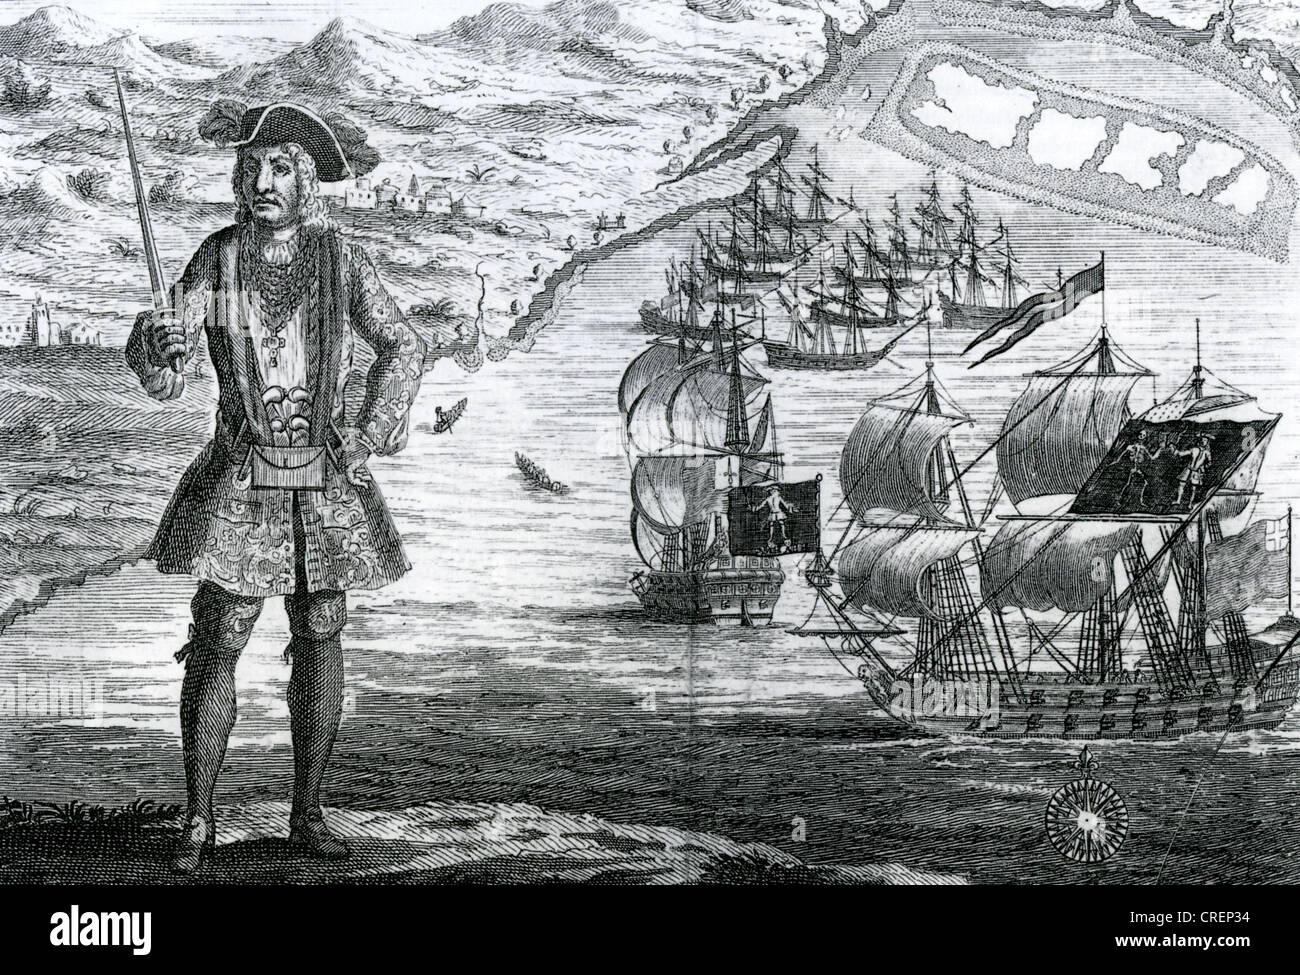 BARTHOLOMEW ROBERTS (1682-1722) alias Black Bart - pirate gallois à Ouidah sur la côte de Guinée de l'Afrique en 1722. Voir Description Banque D'Images